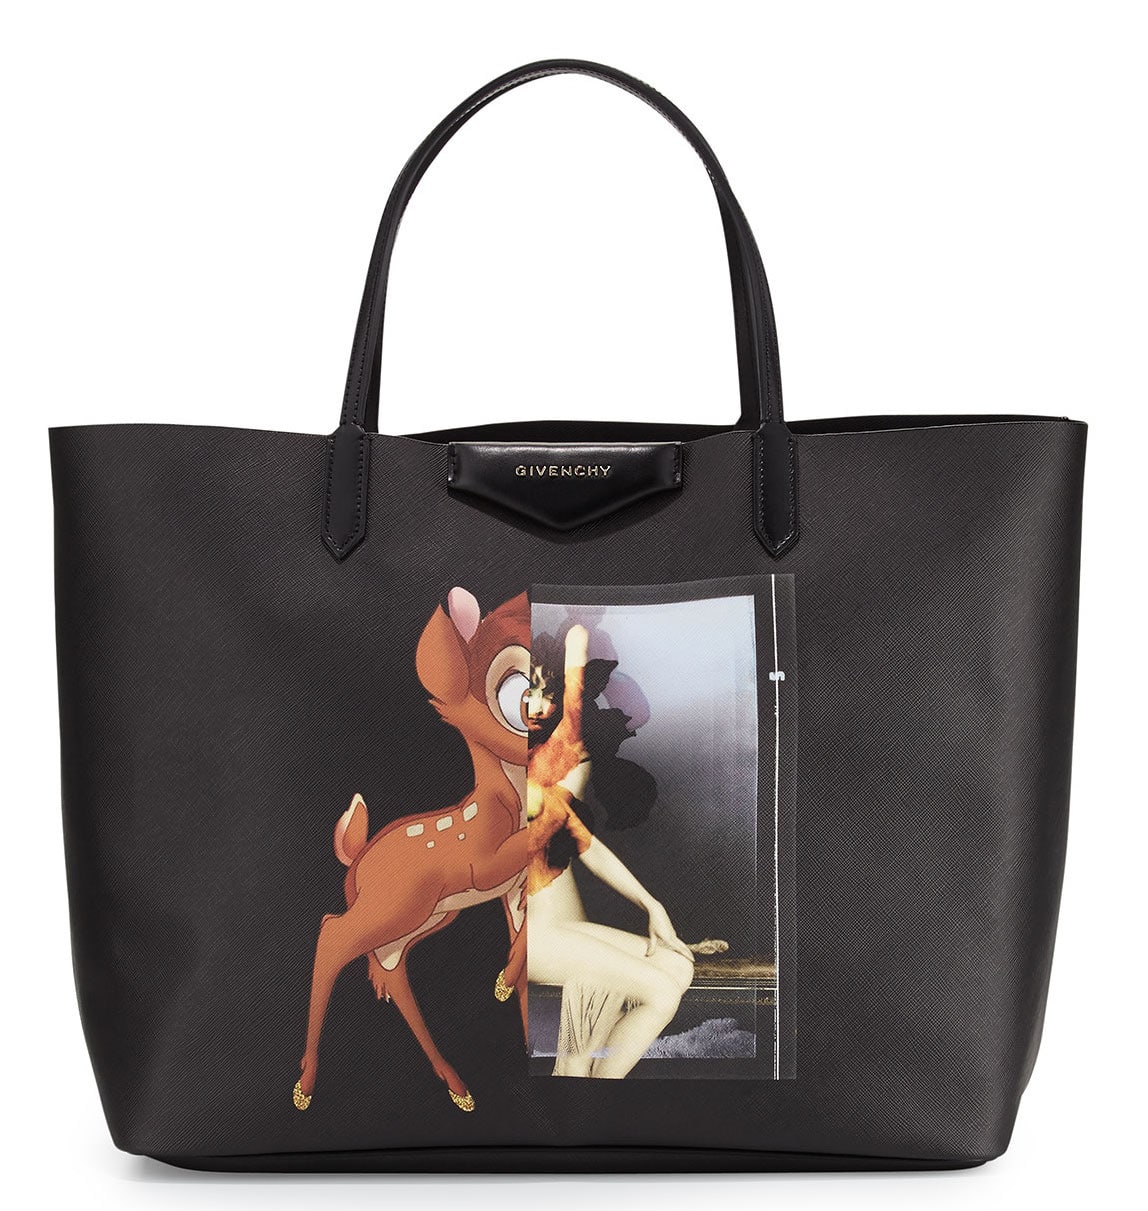 Givenchy Antigona Large Shopping Tote Bag